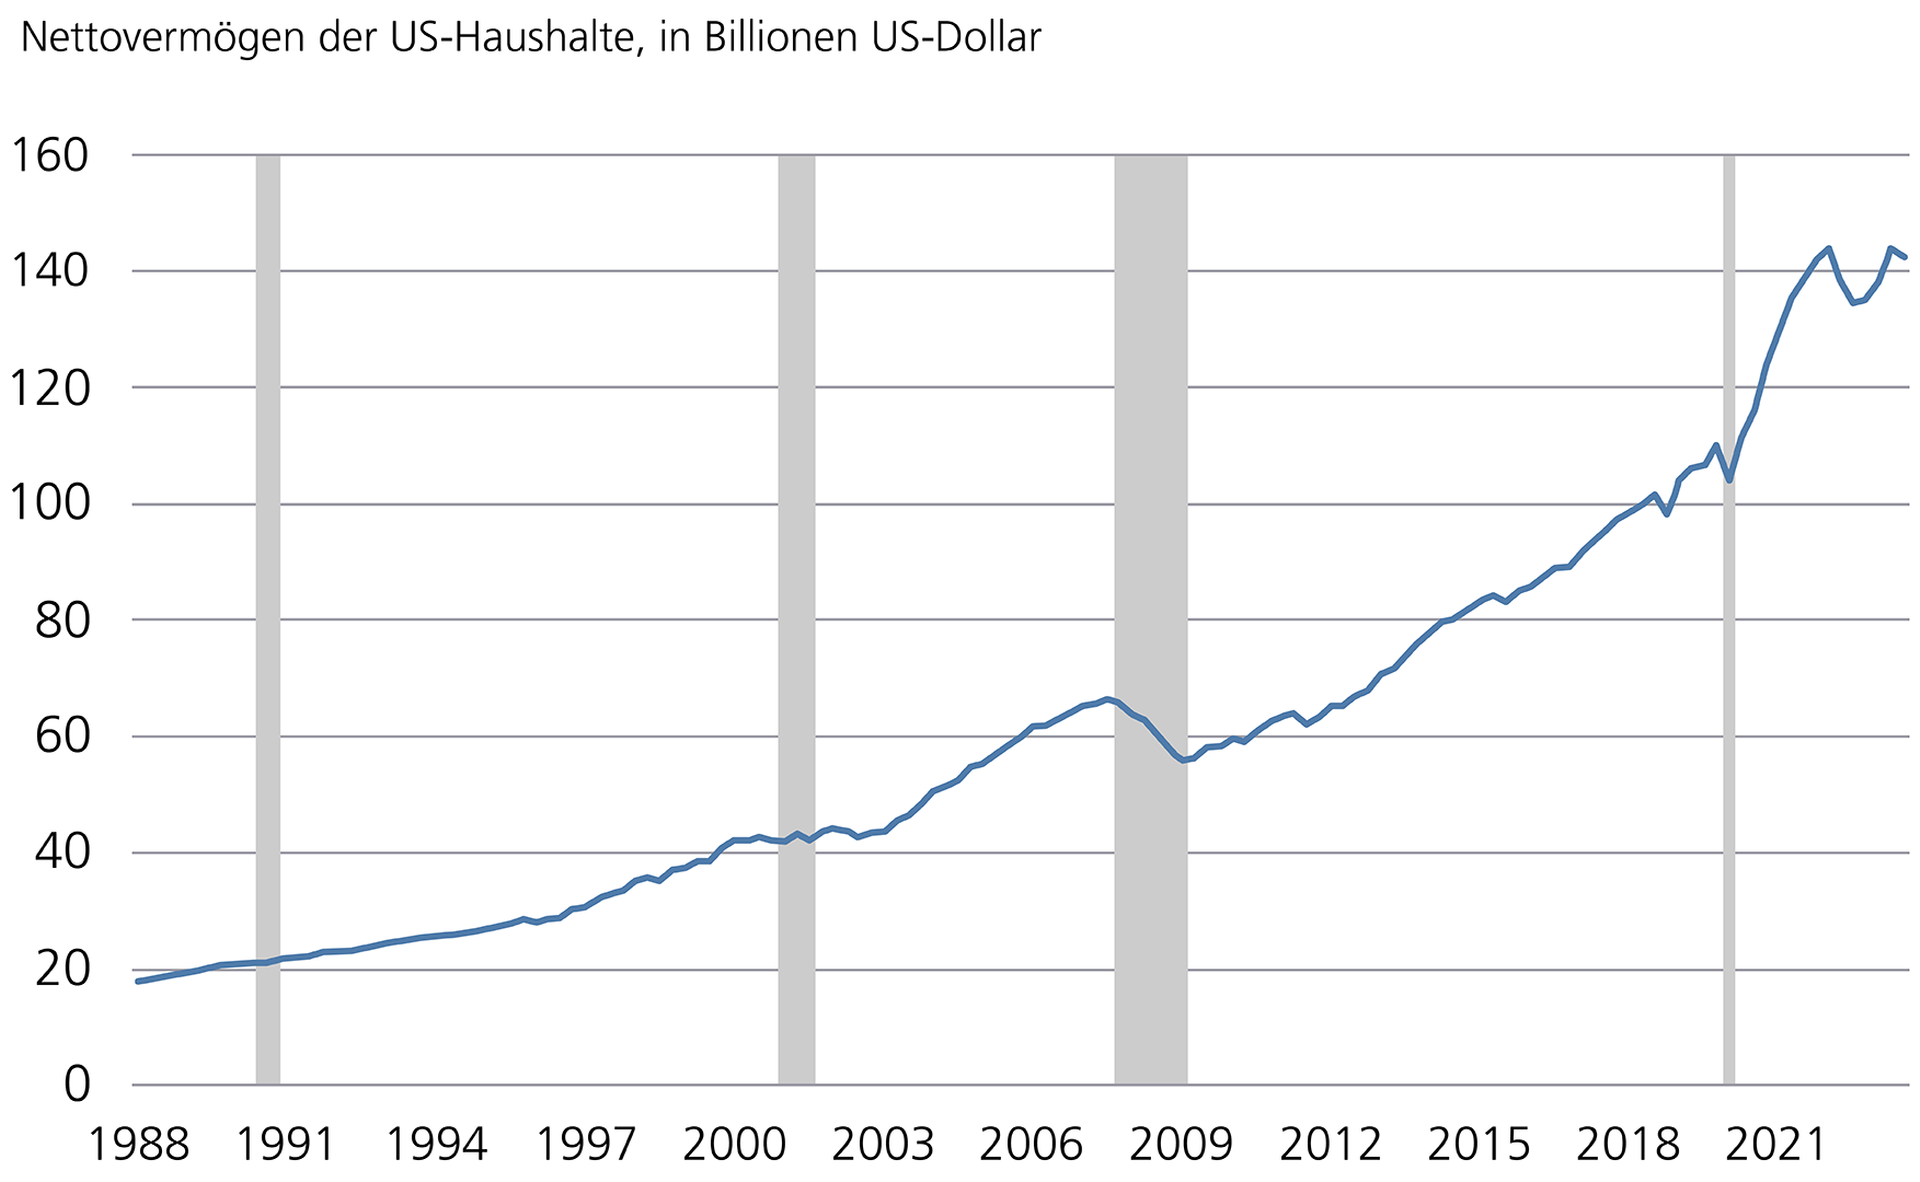 US-Haushalte: Nettovermögen bleibt hoch